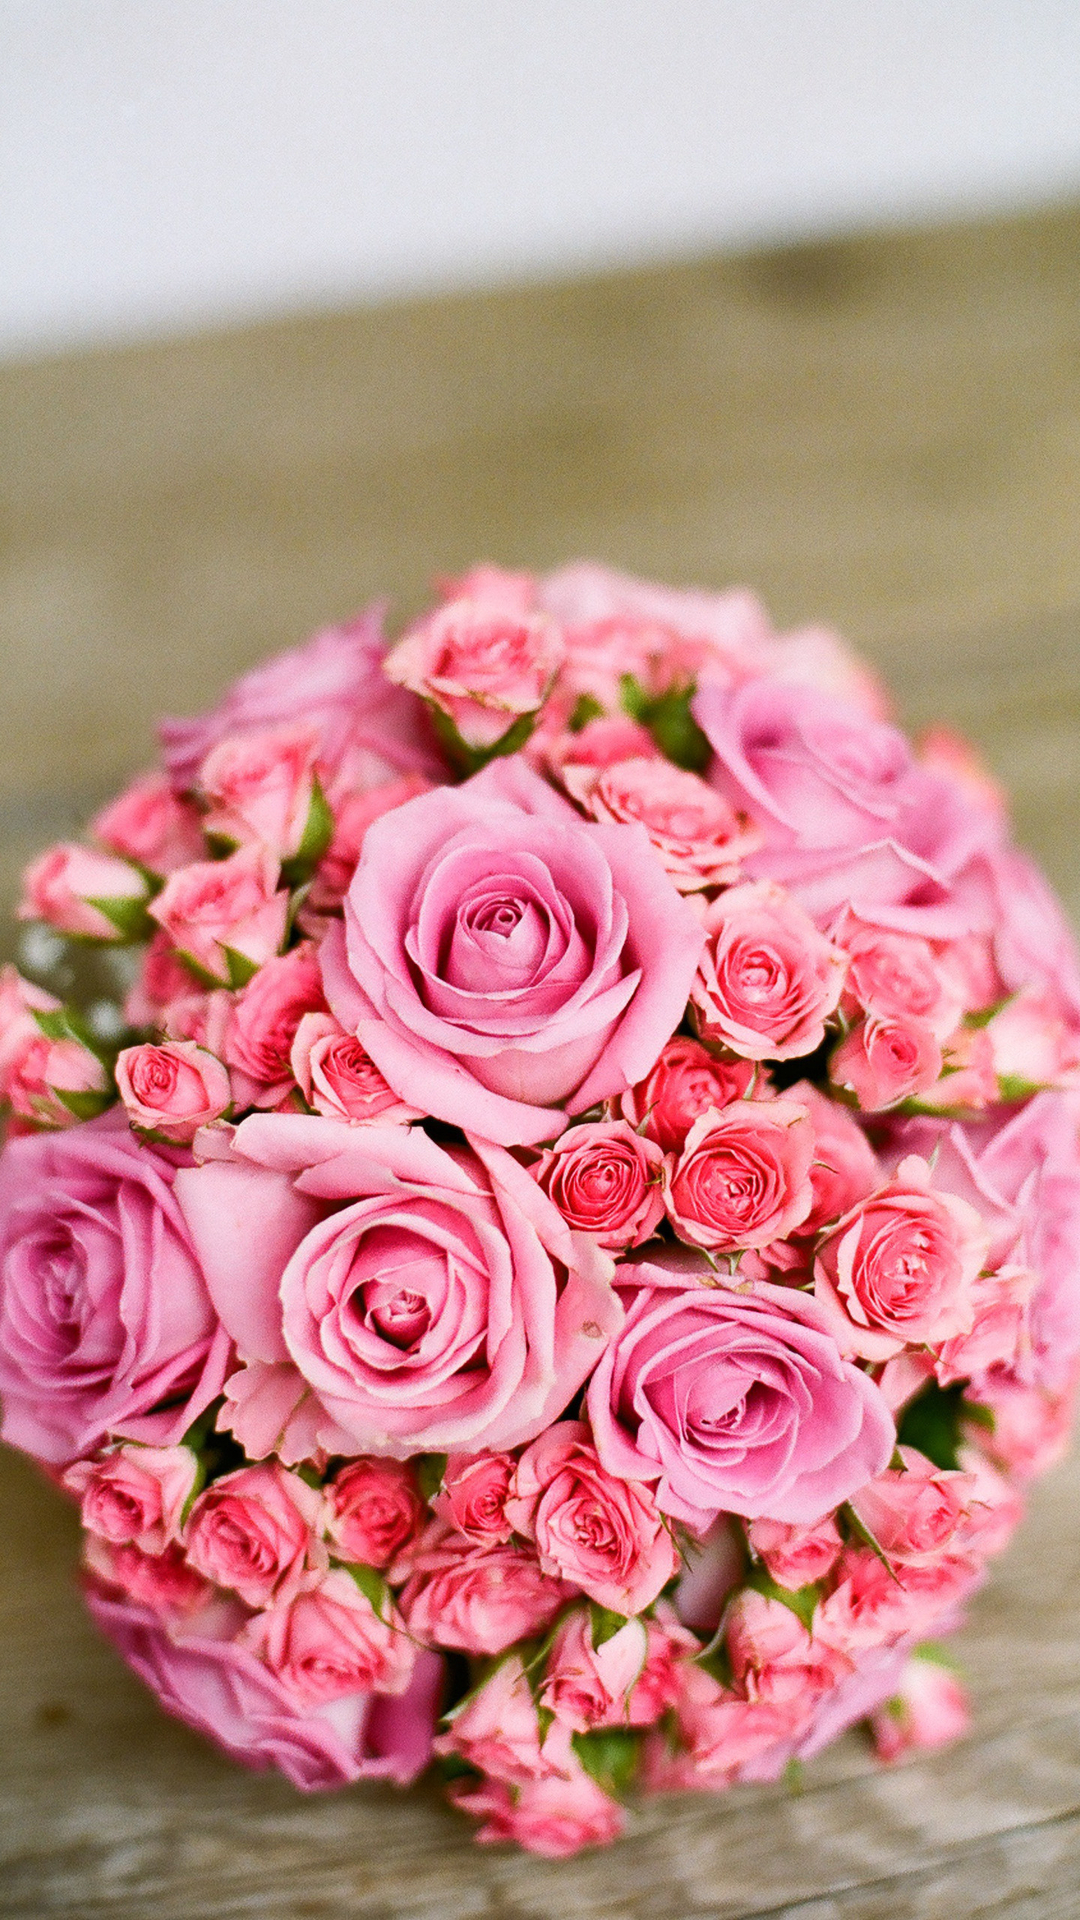 盛开的玫瑰花唯美植物摄影手机壁纸套图1